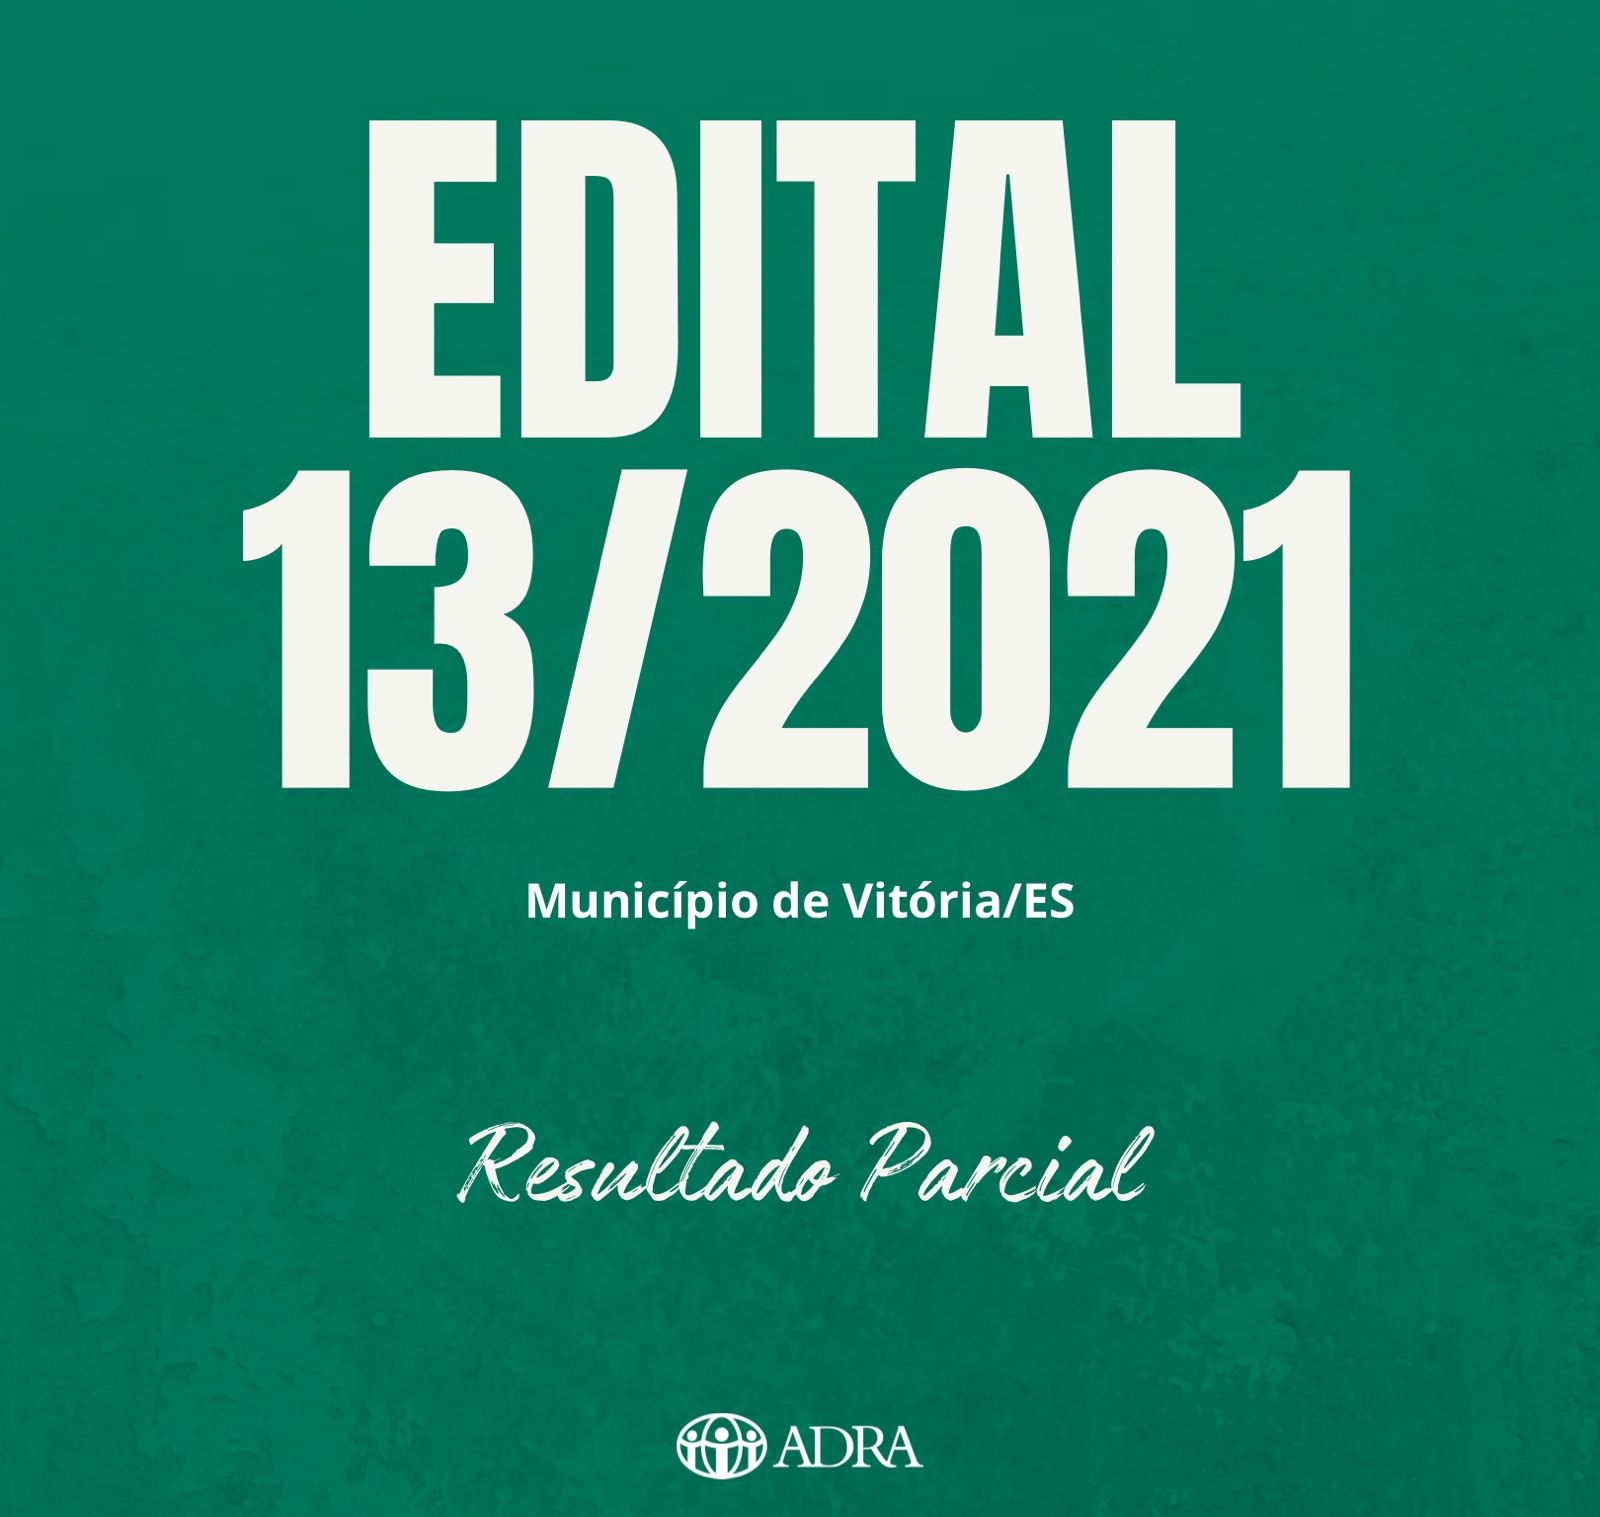 EDITAL 013/2021 – RESULTADO PARCIAL